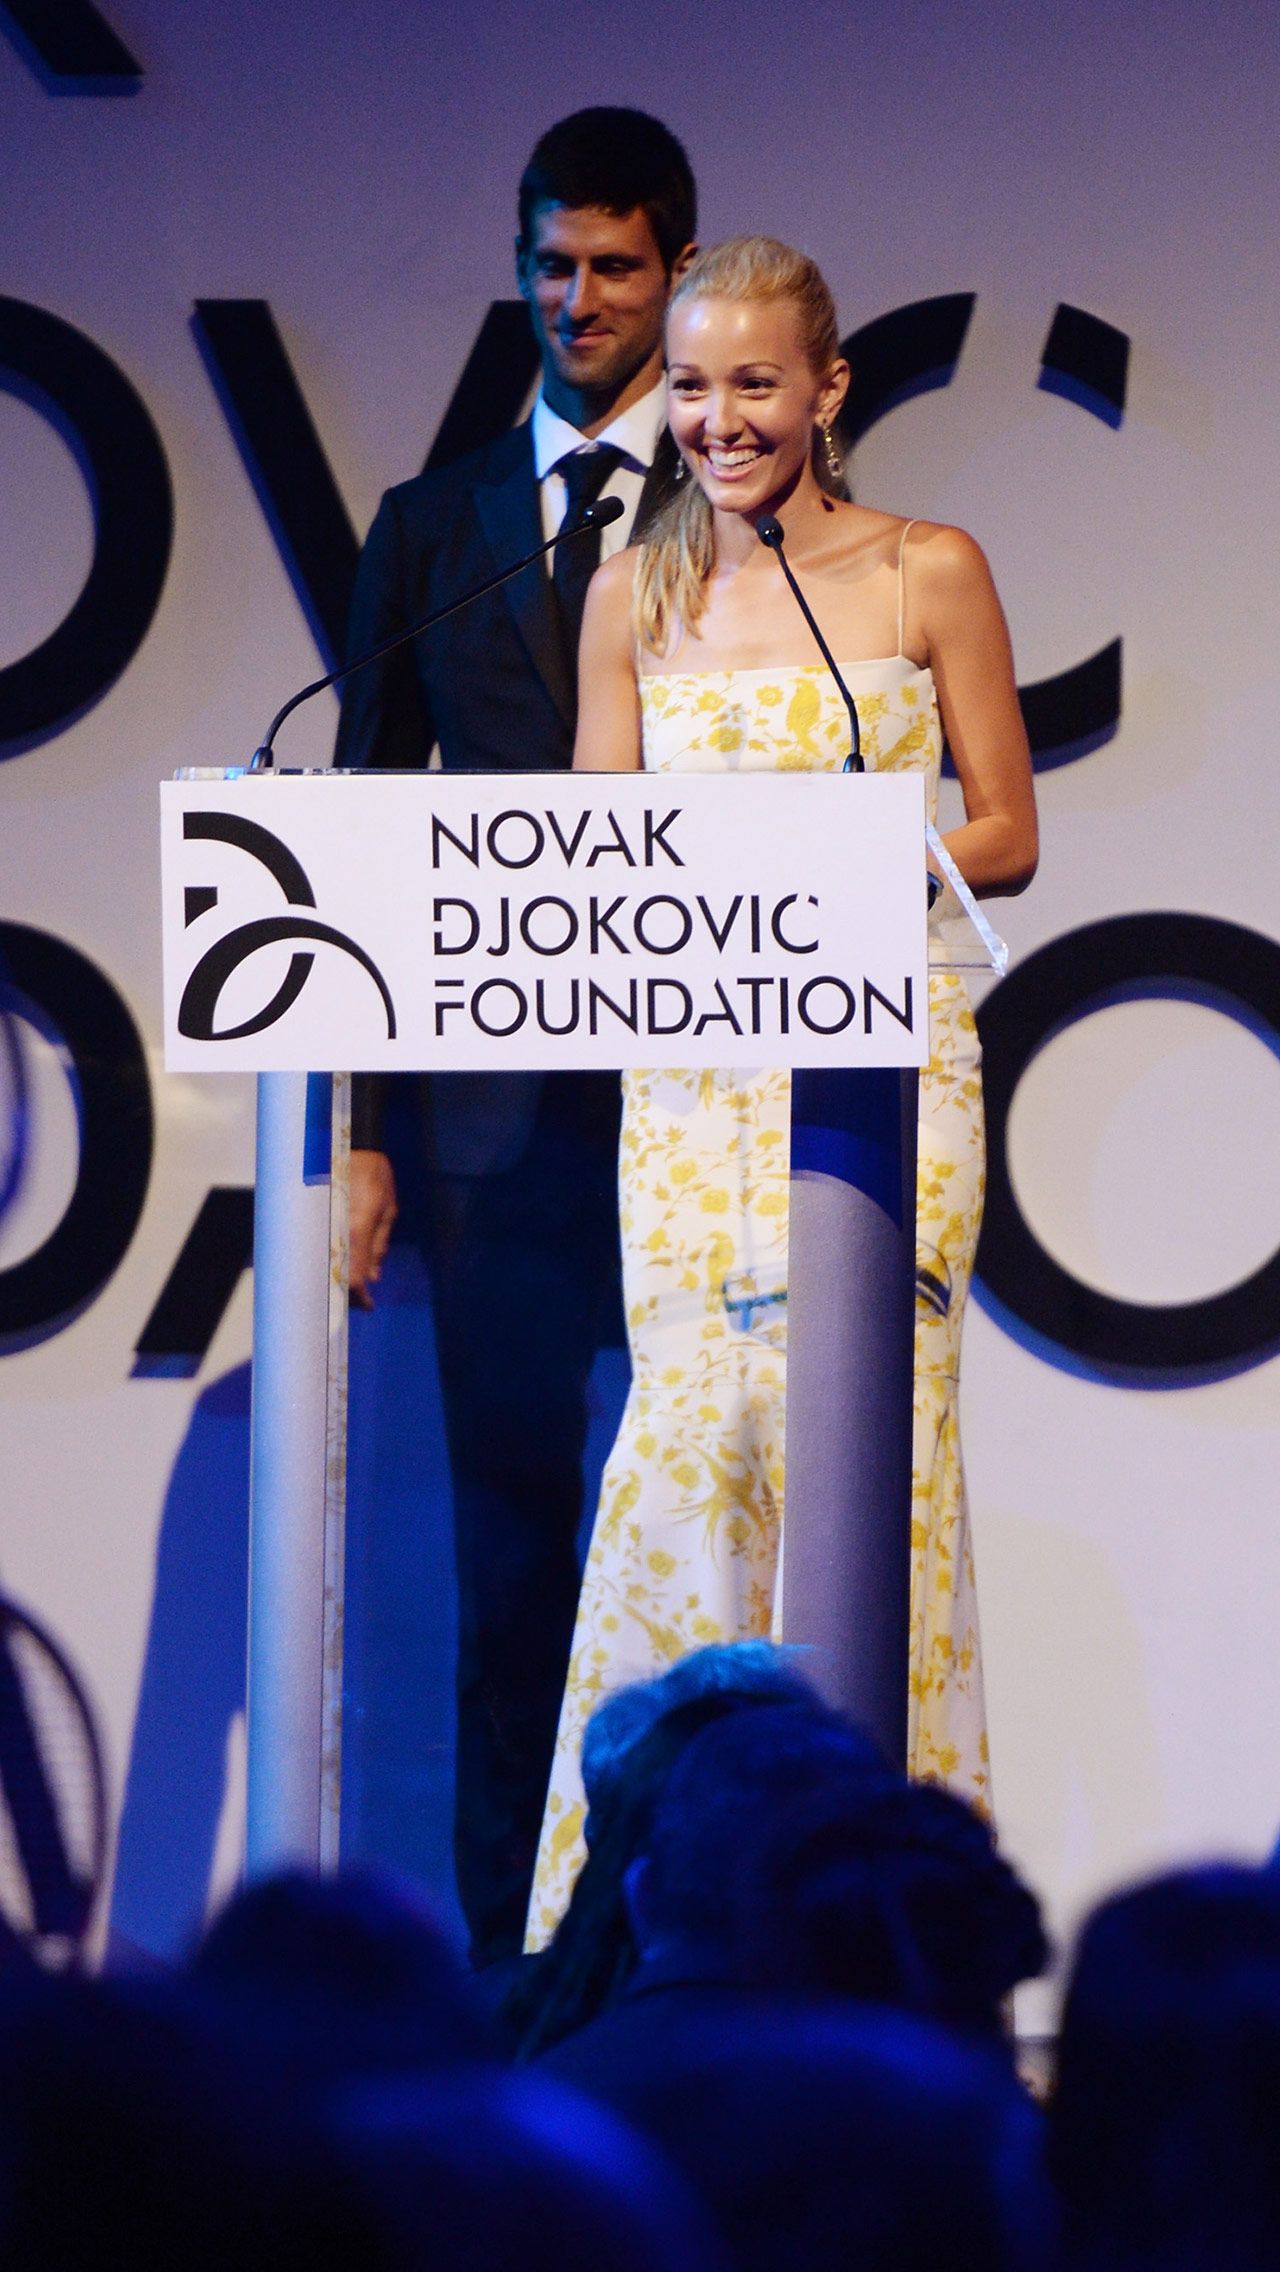 Сейчас Елена является директором благотворительного фонда Novak Djokovic Foundation, у неё есть высшее образование в области управления бизнесом.